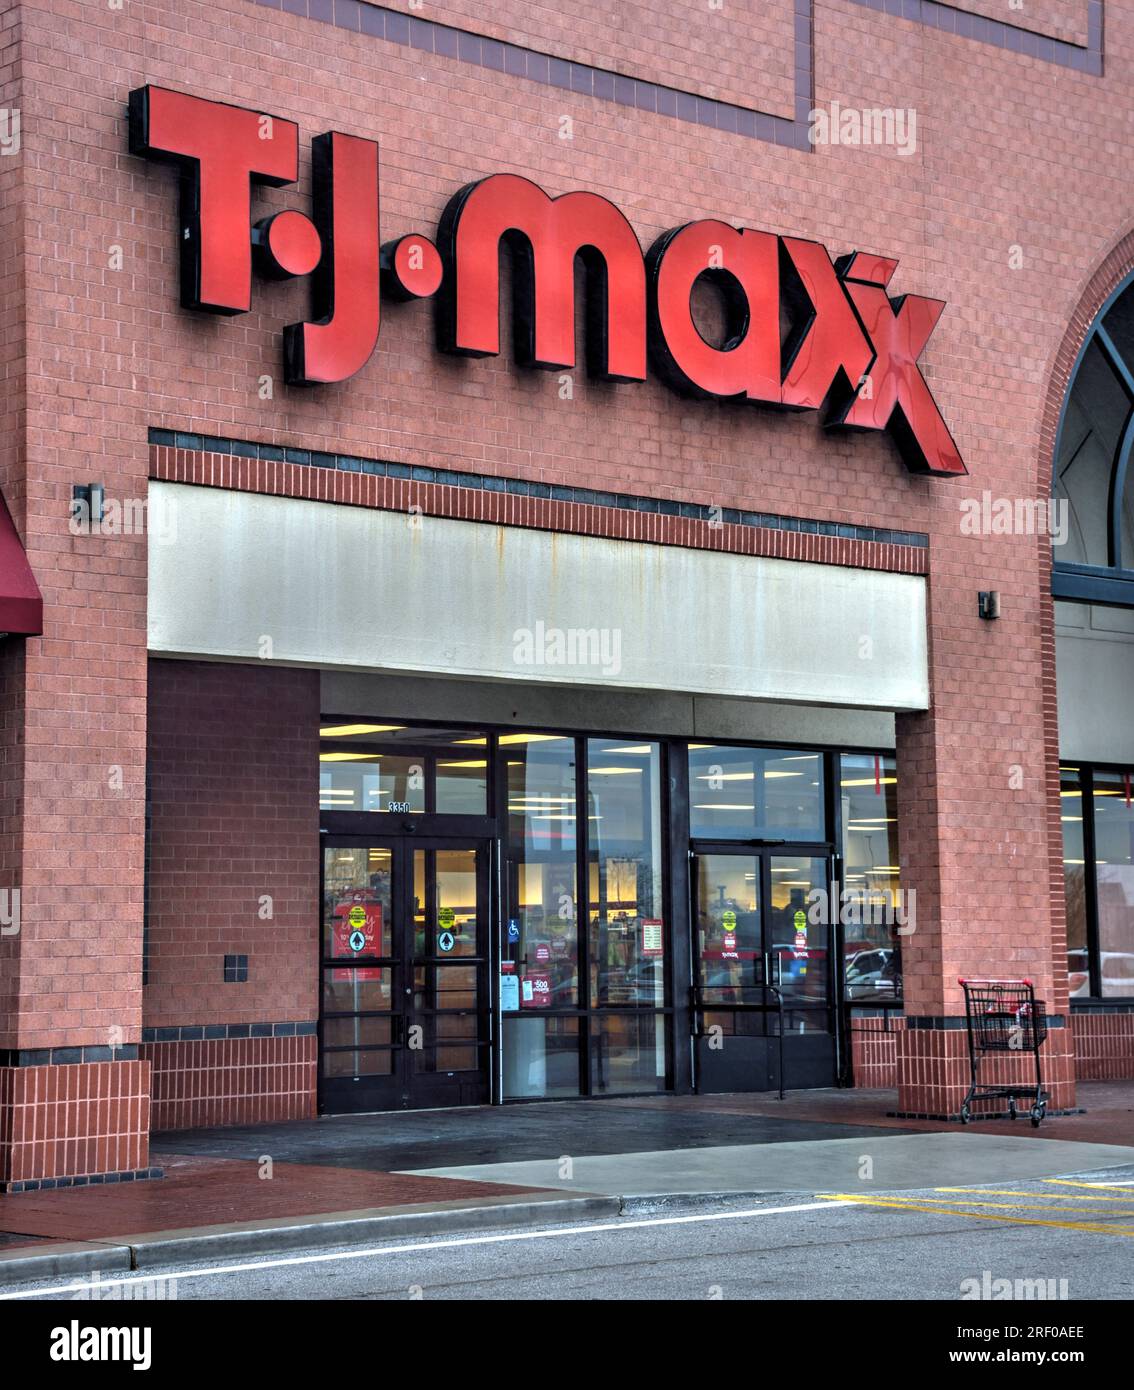 Springfield, Missouri - 20. März 2019: T.J. Maxx Retail Store Location. T.J Maxx ist eine preisgünstige Einzelhandelskette mit Markenbekleidung und -Schuhen. Stockfoto